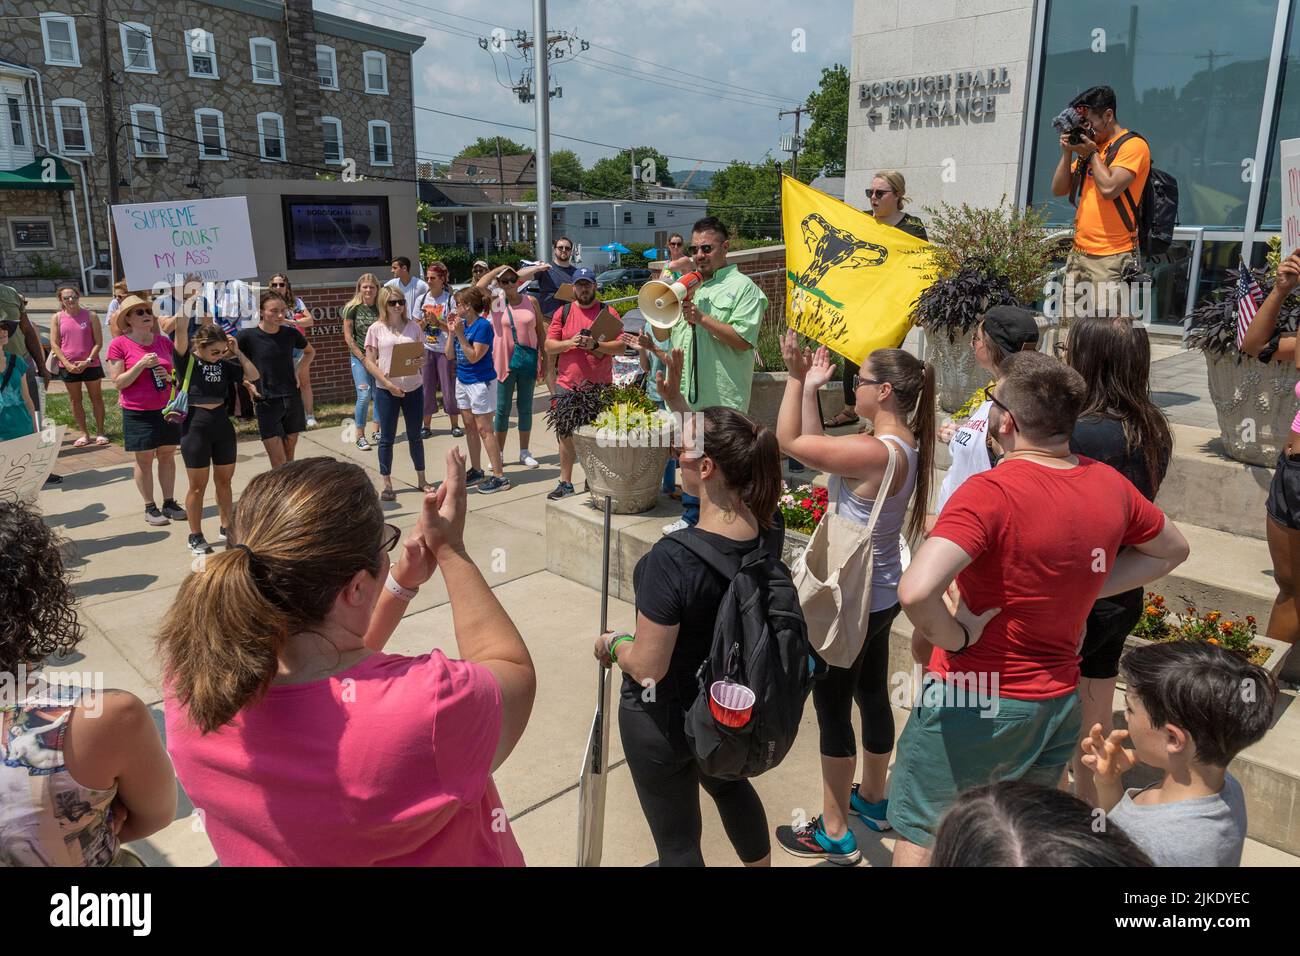 Pro Choice Women's Rights March & Rally à Philadelphie, Pennsylvanie, États-Unis, 16 juillet 2022 Banque D'Images